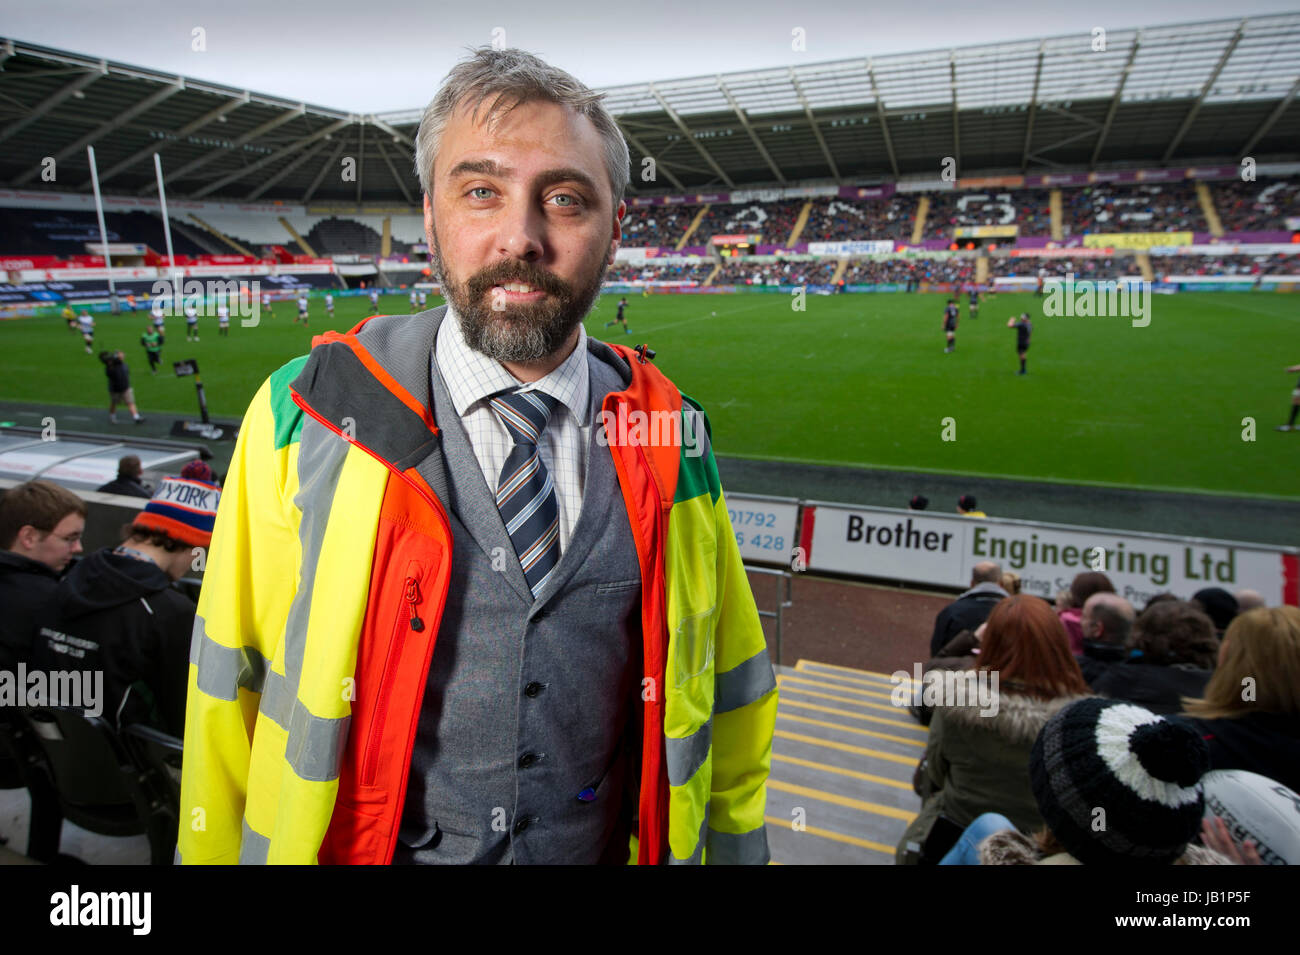 Dr. Russell Clark, ein Arzt für Allgemeinmedizin, arbeitet als Pflicht Arzt in Rugby Treffer auf der Liberty Stadium, Swansea, Wales. Stockfoto